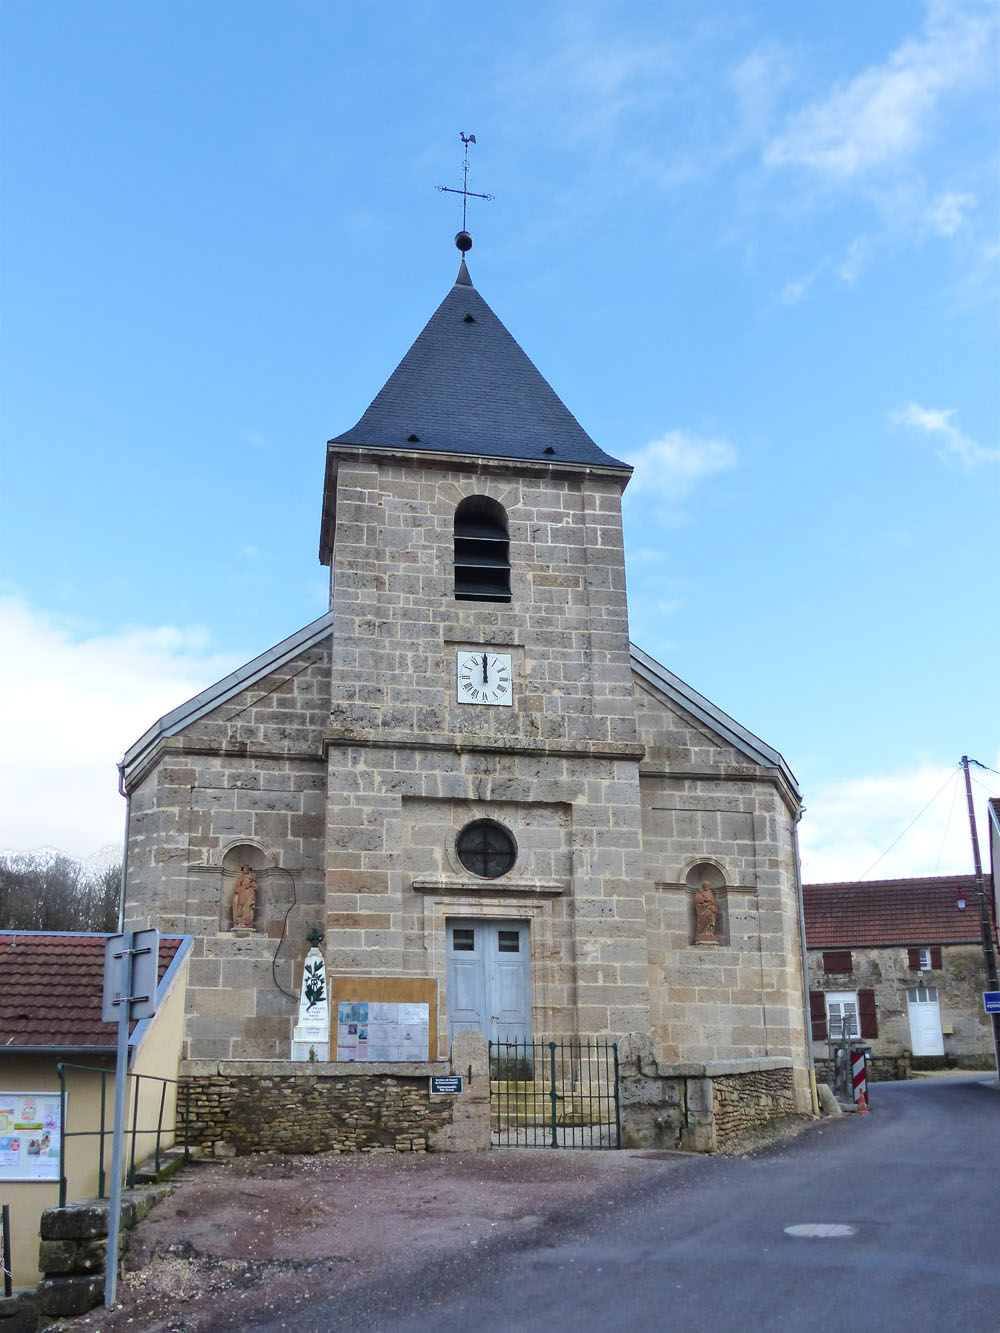 Église paroissiale Saint-Vallier restauration confortation  mise aux normes vitry-les-nogent